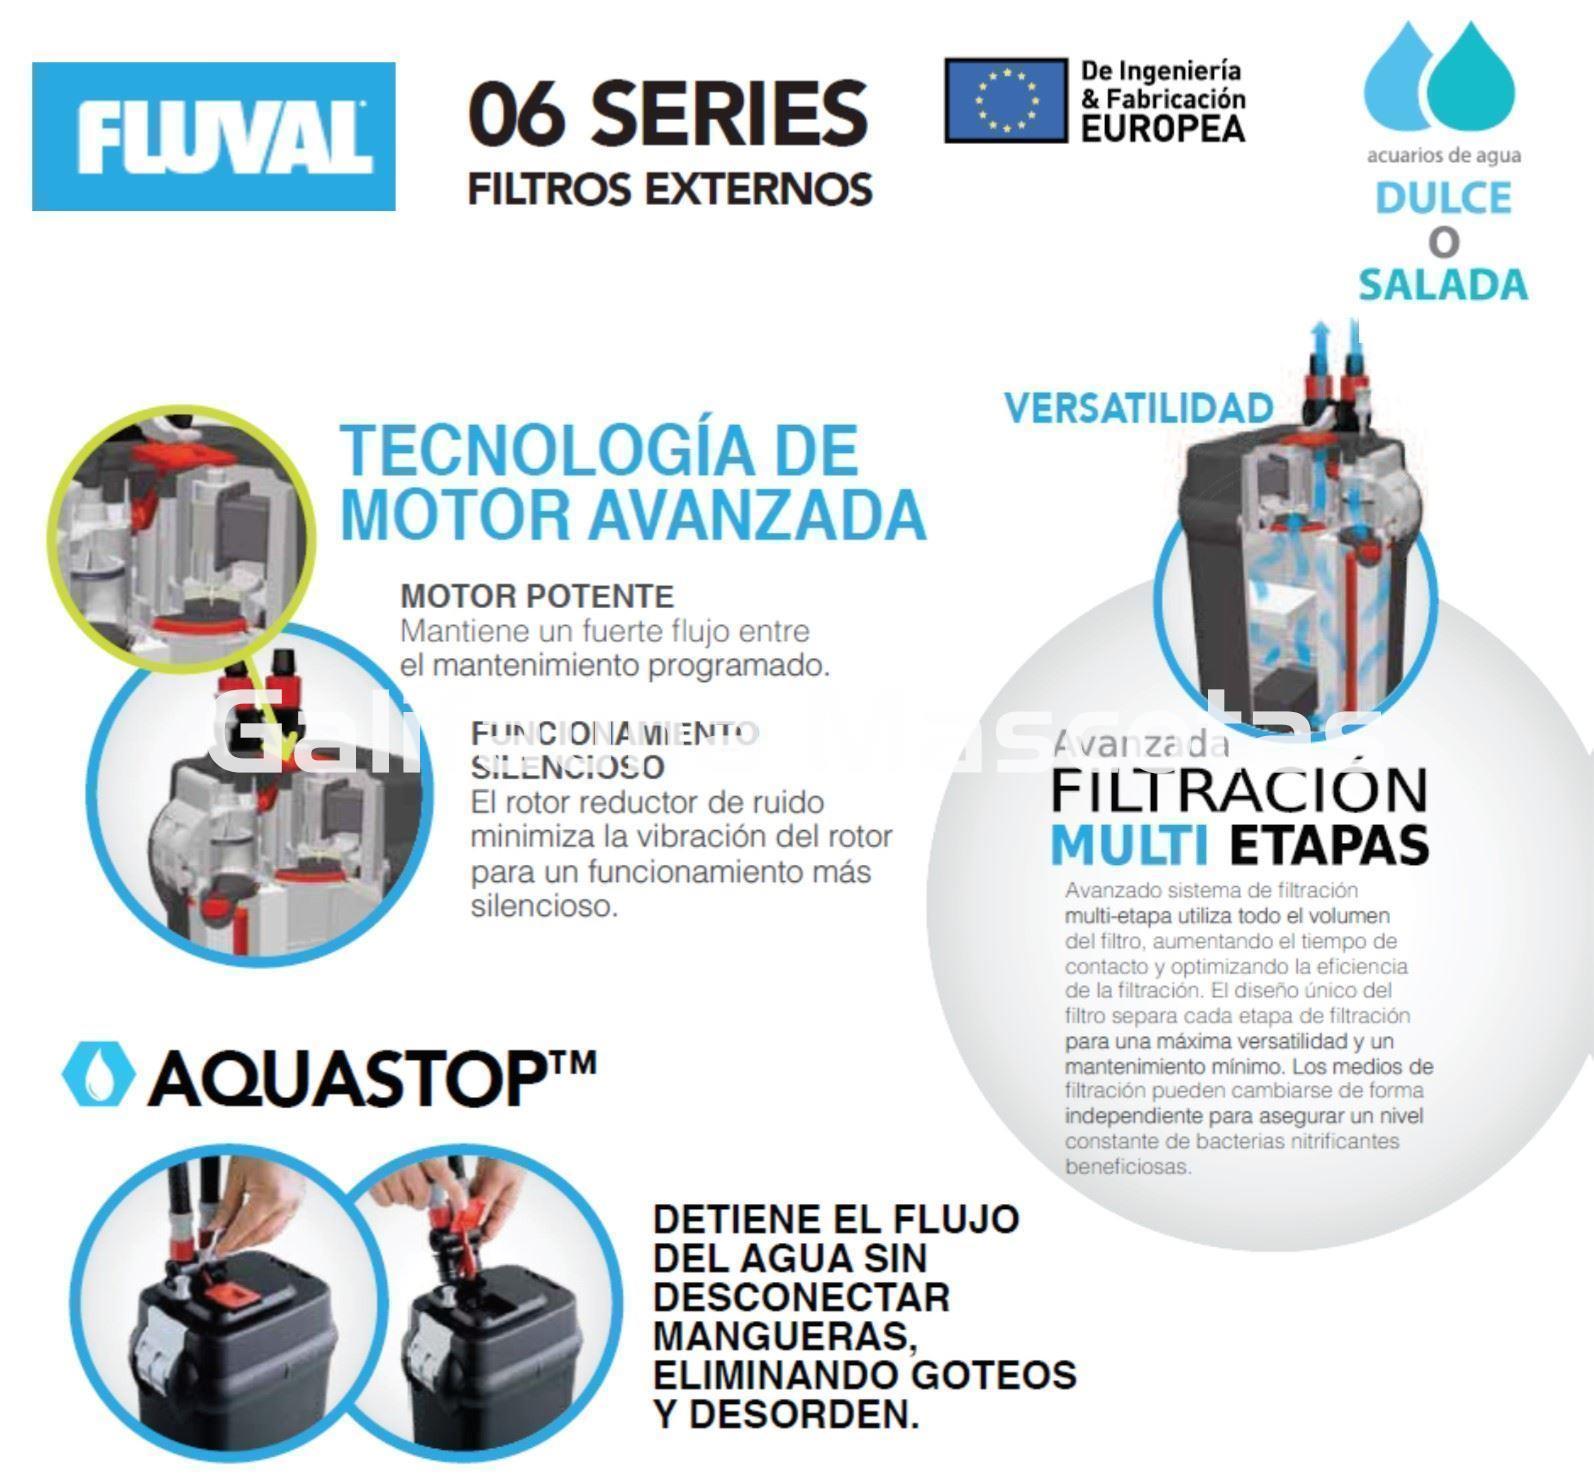 Filtro exterior FLUVAL serie 06. Caudal 550 l/h. - Imagen 2